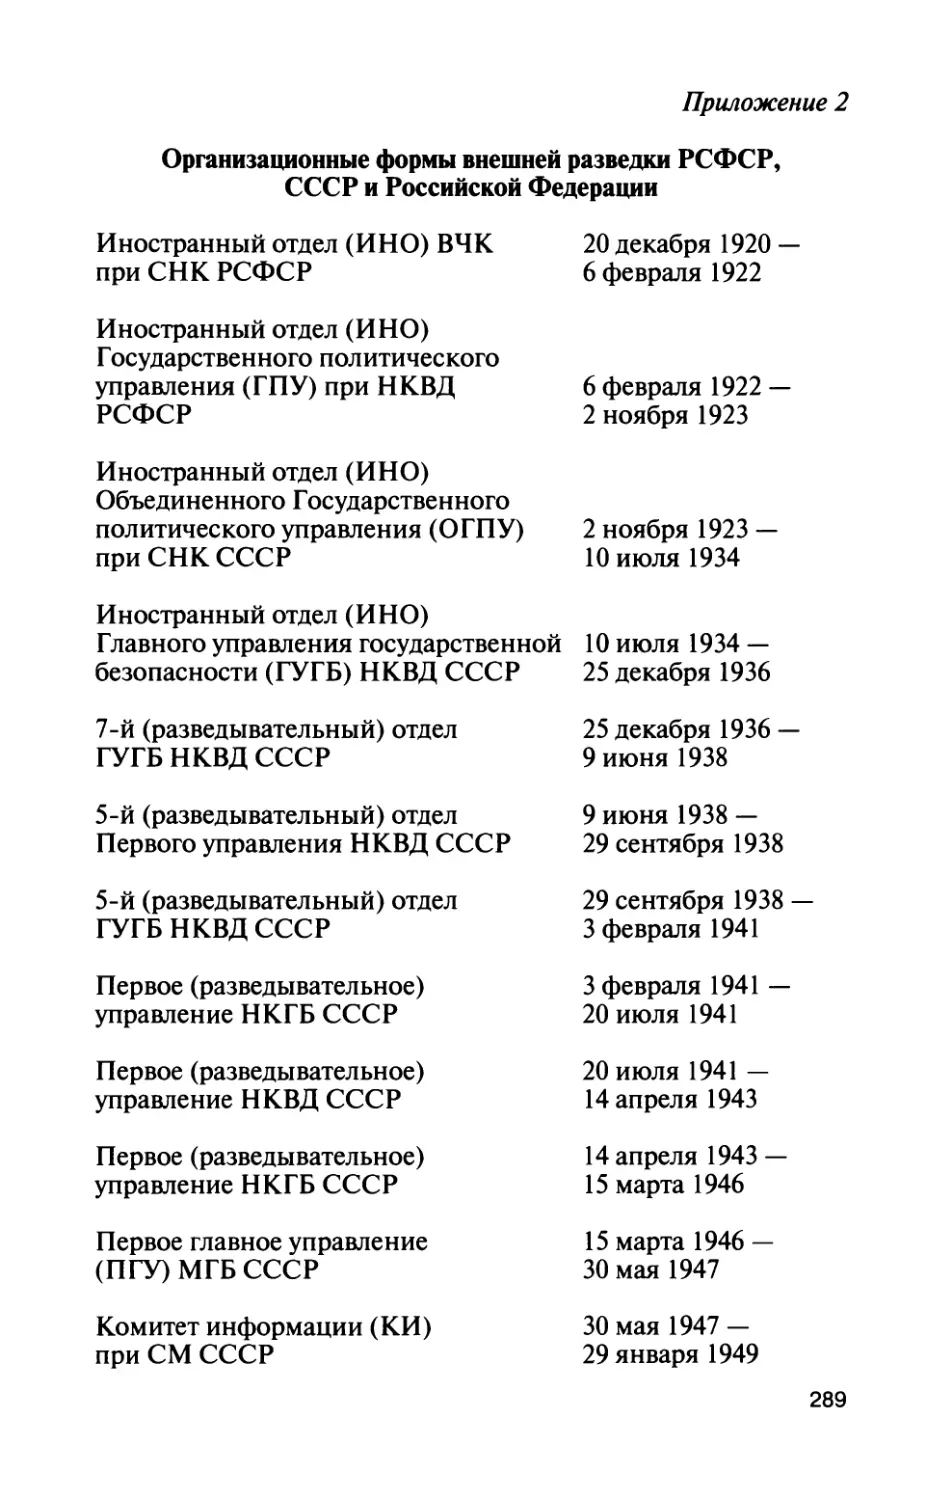 Приложение 2. Организационные формы внешней разведки РСФСР, СССР и Российской Федерации